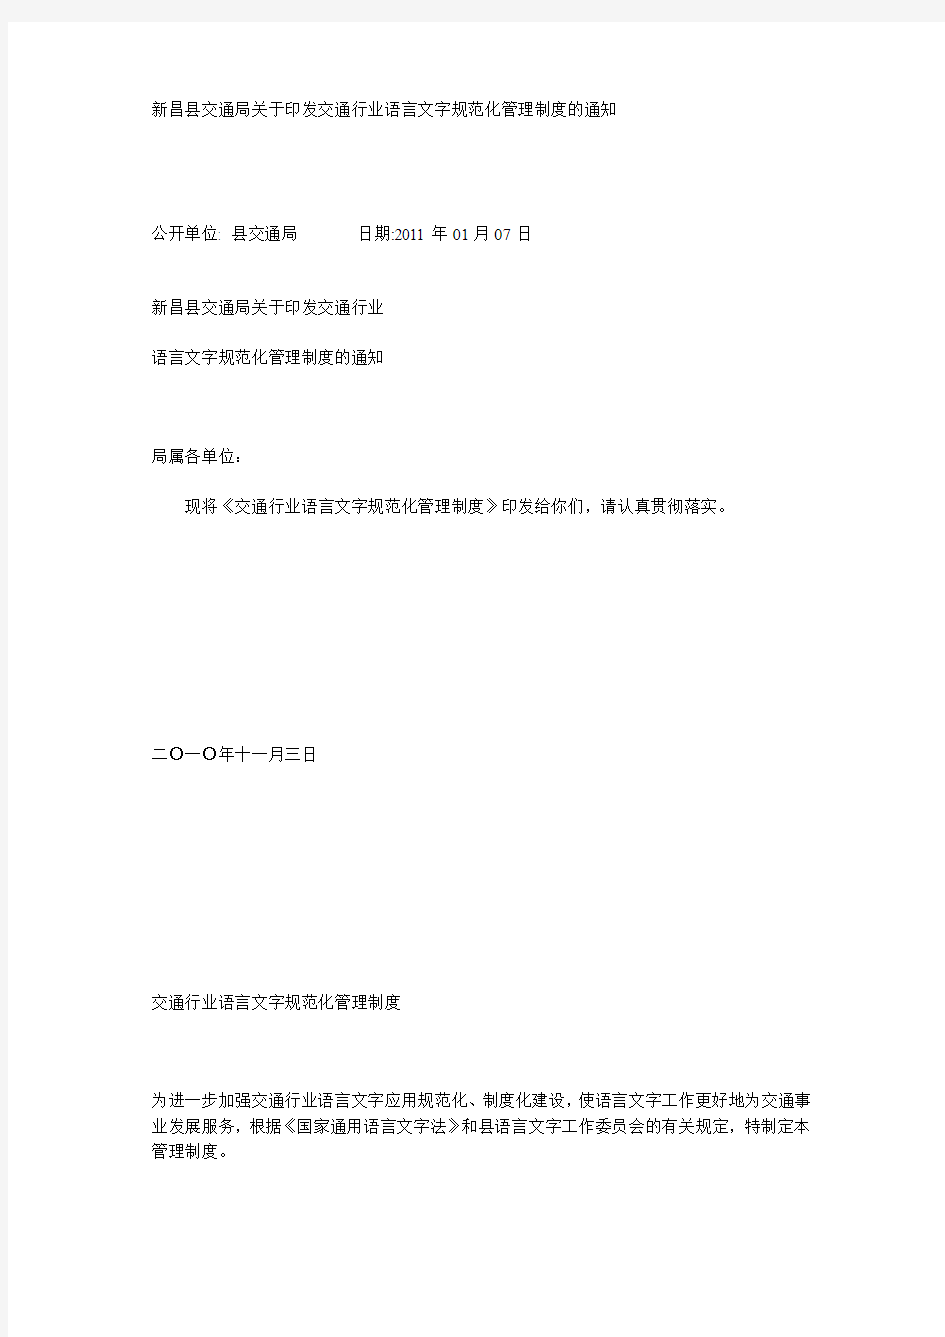 新昌县交通局关于印发交通行业语言文字规范化管理制度的通知